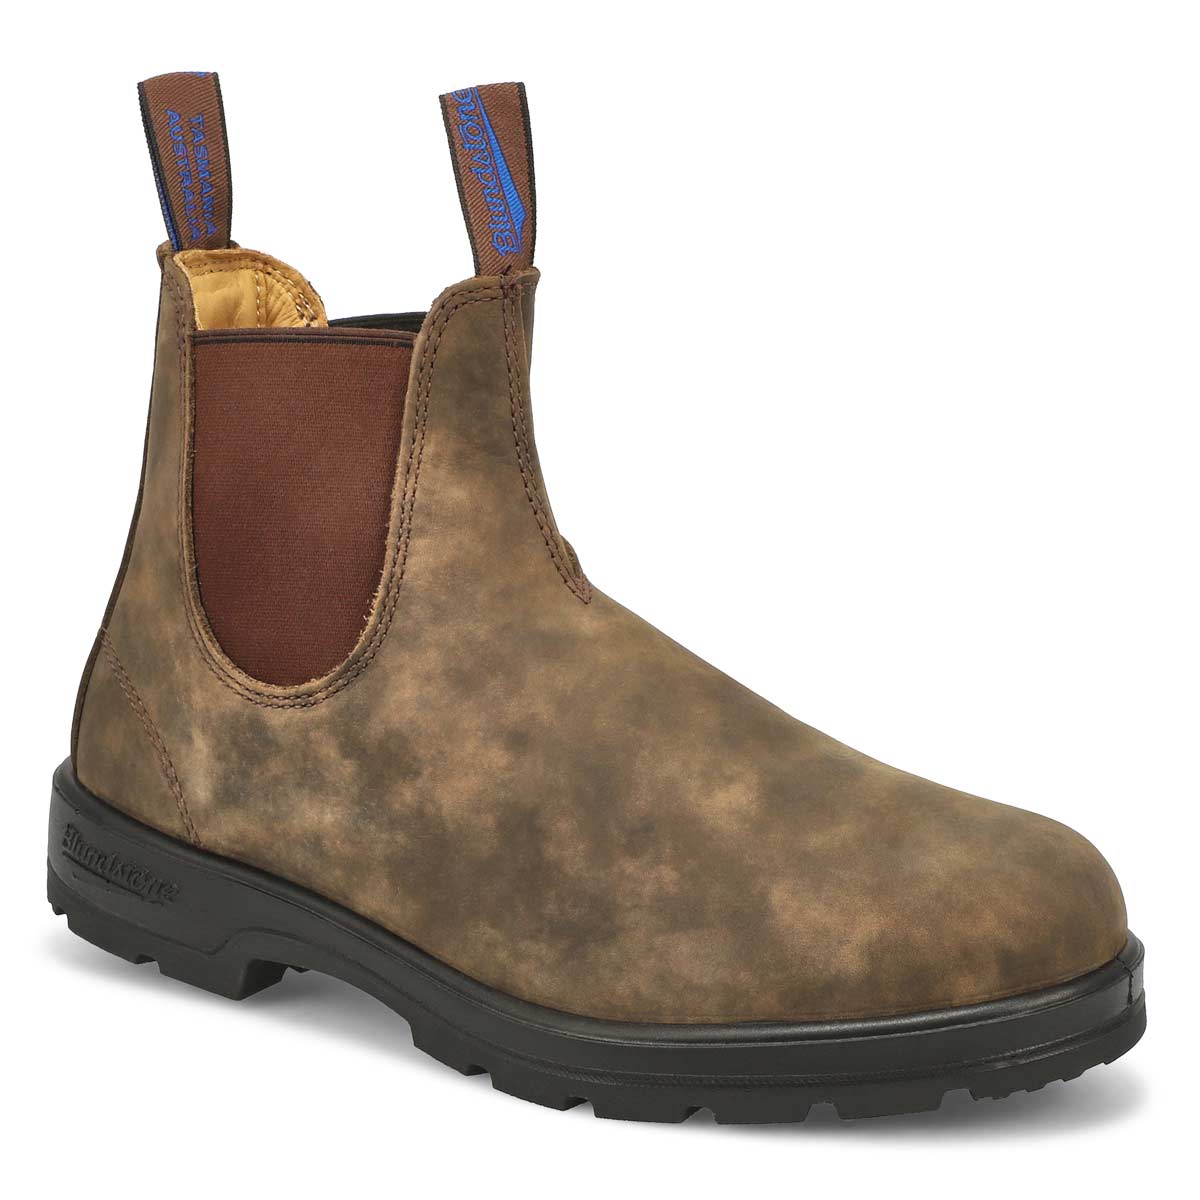 blundstone boots waterproof